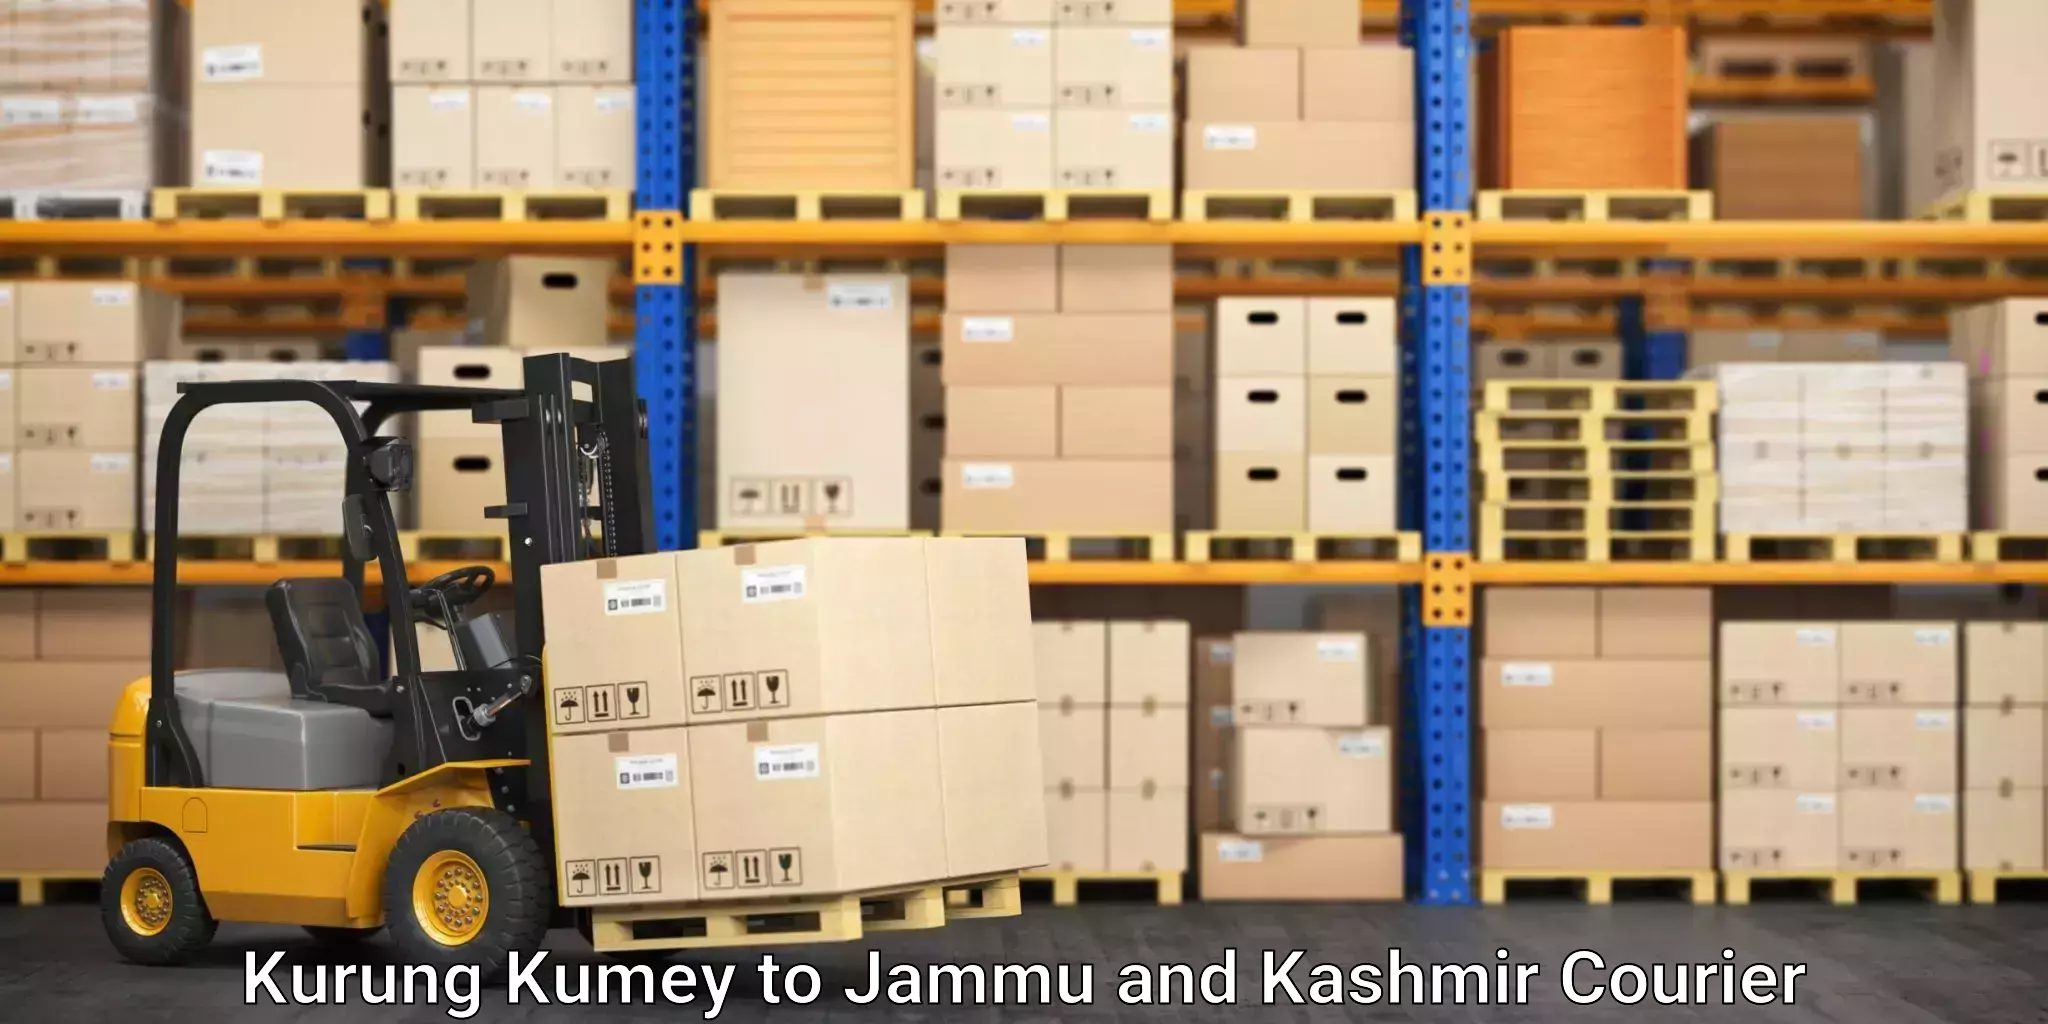 Expedited shipping solutions Kurung Kumey to Rajouri